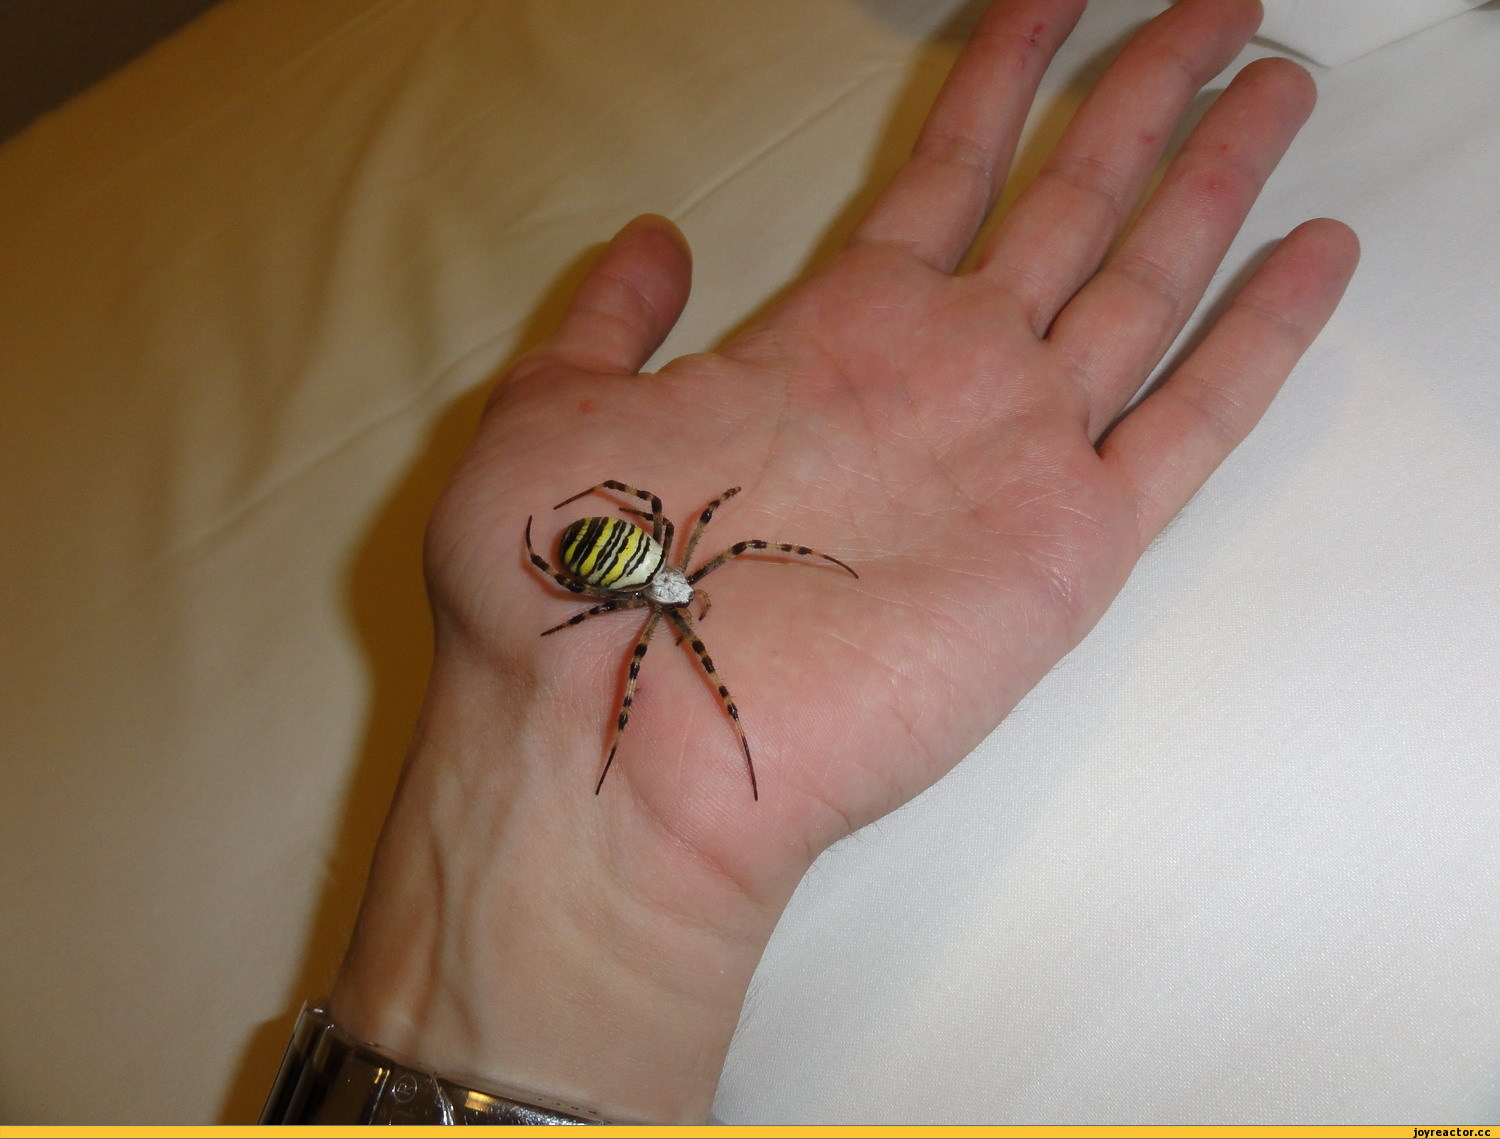 Фото читателя: в Эстонии появился осиный паук. Осторожно, кусается!